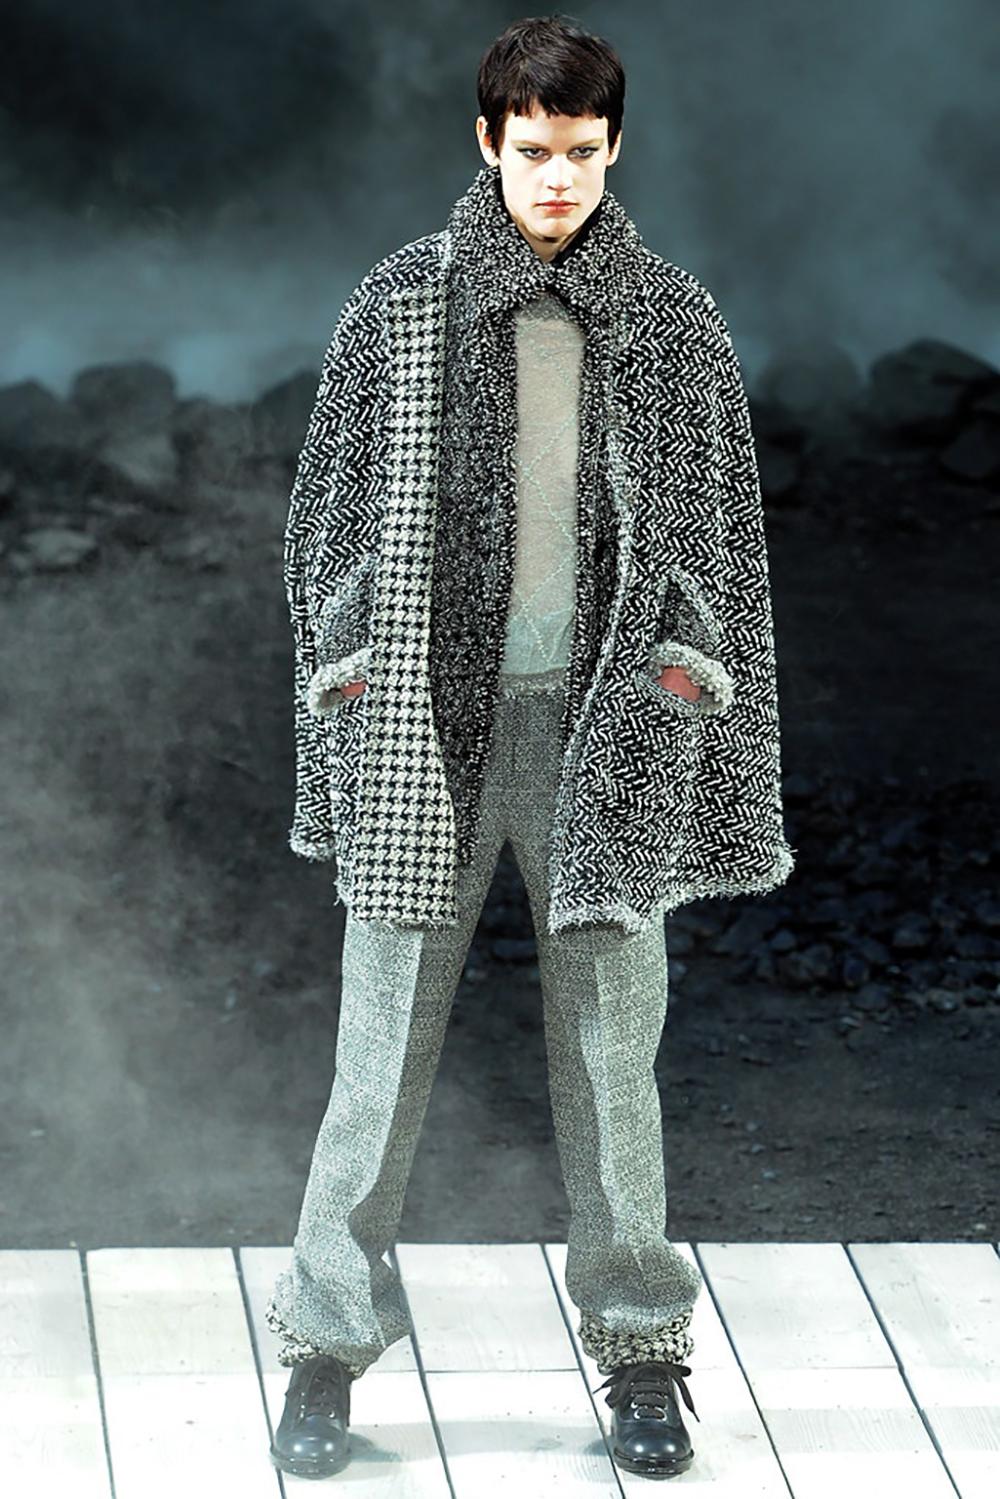 Manteau gris en cachemire épais de la Collection S S 2011 de Karl Lagerfeld.
- Boutons du logo CC
- partie intérieure duveteuse / doublure
Taille 38 FR, surdimensionnée. État impeccable.